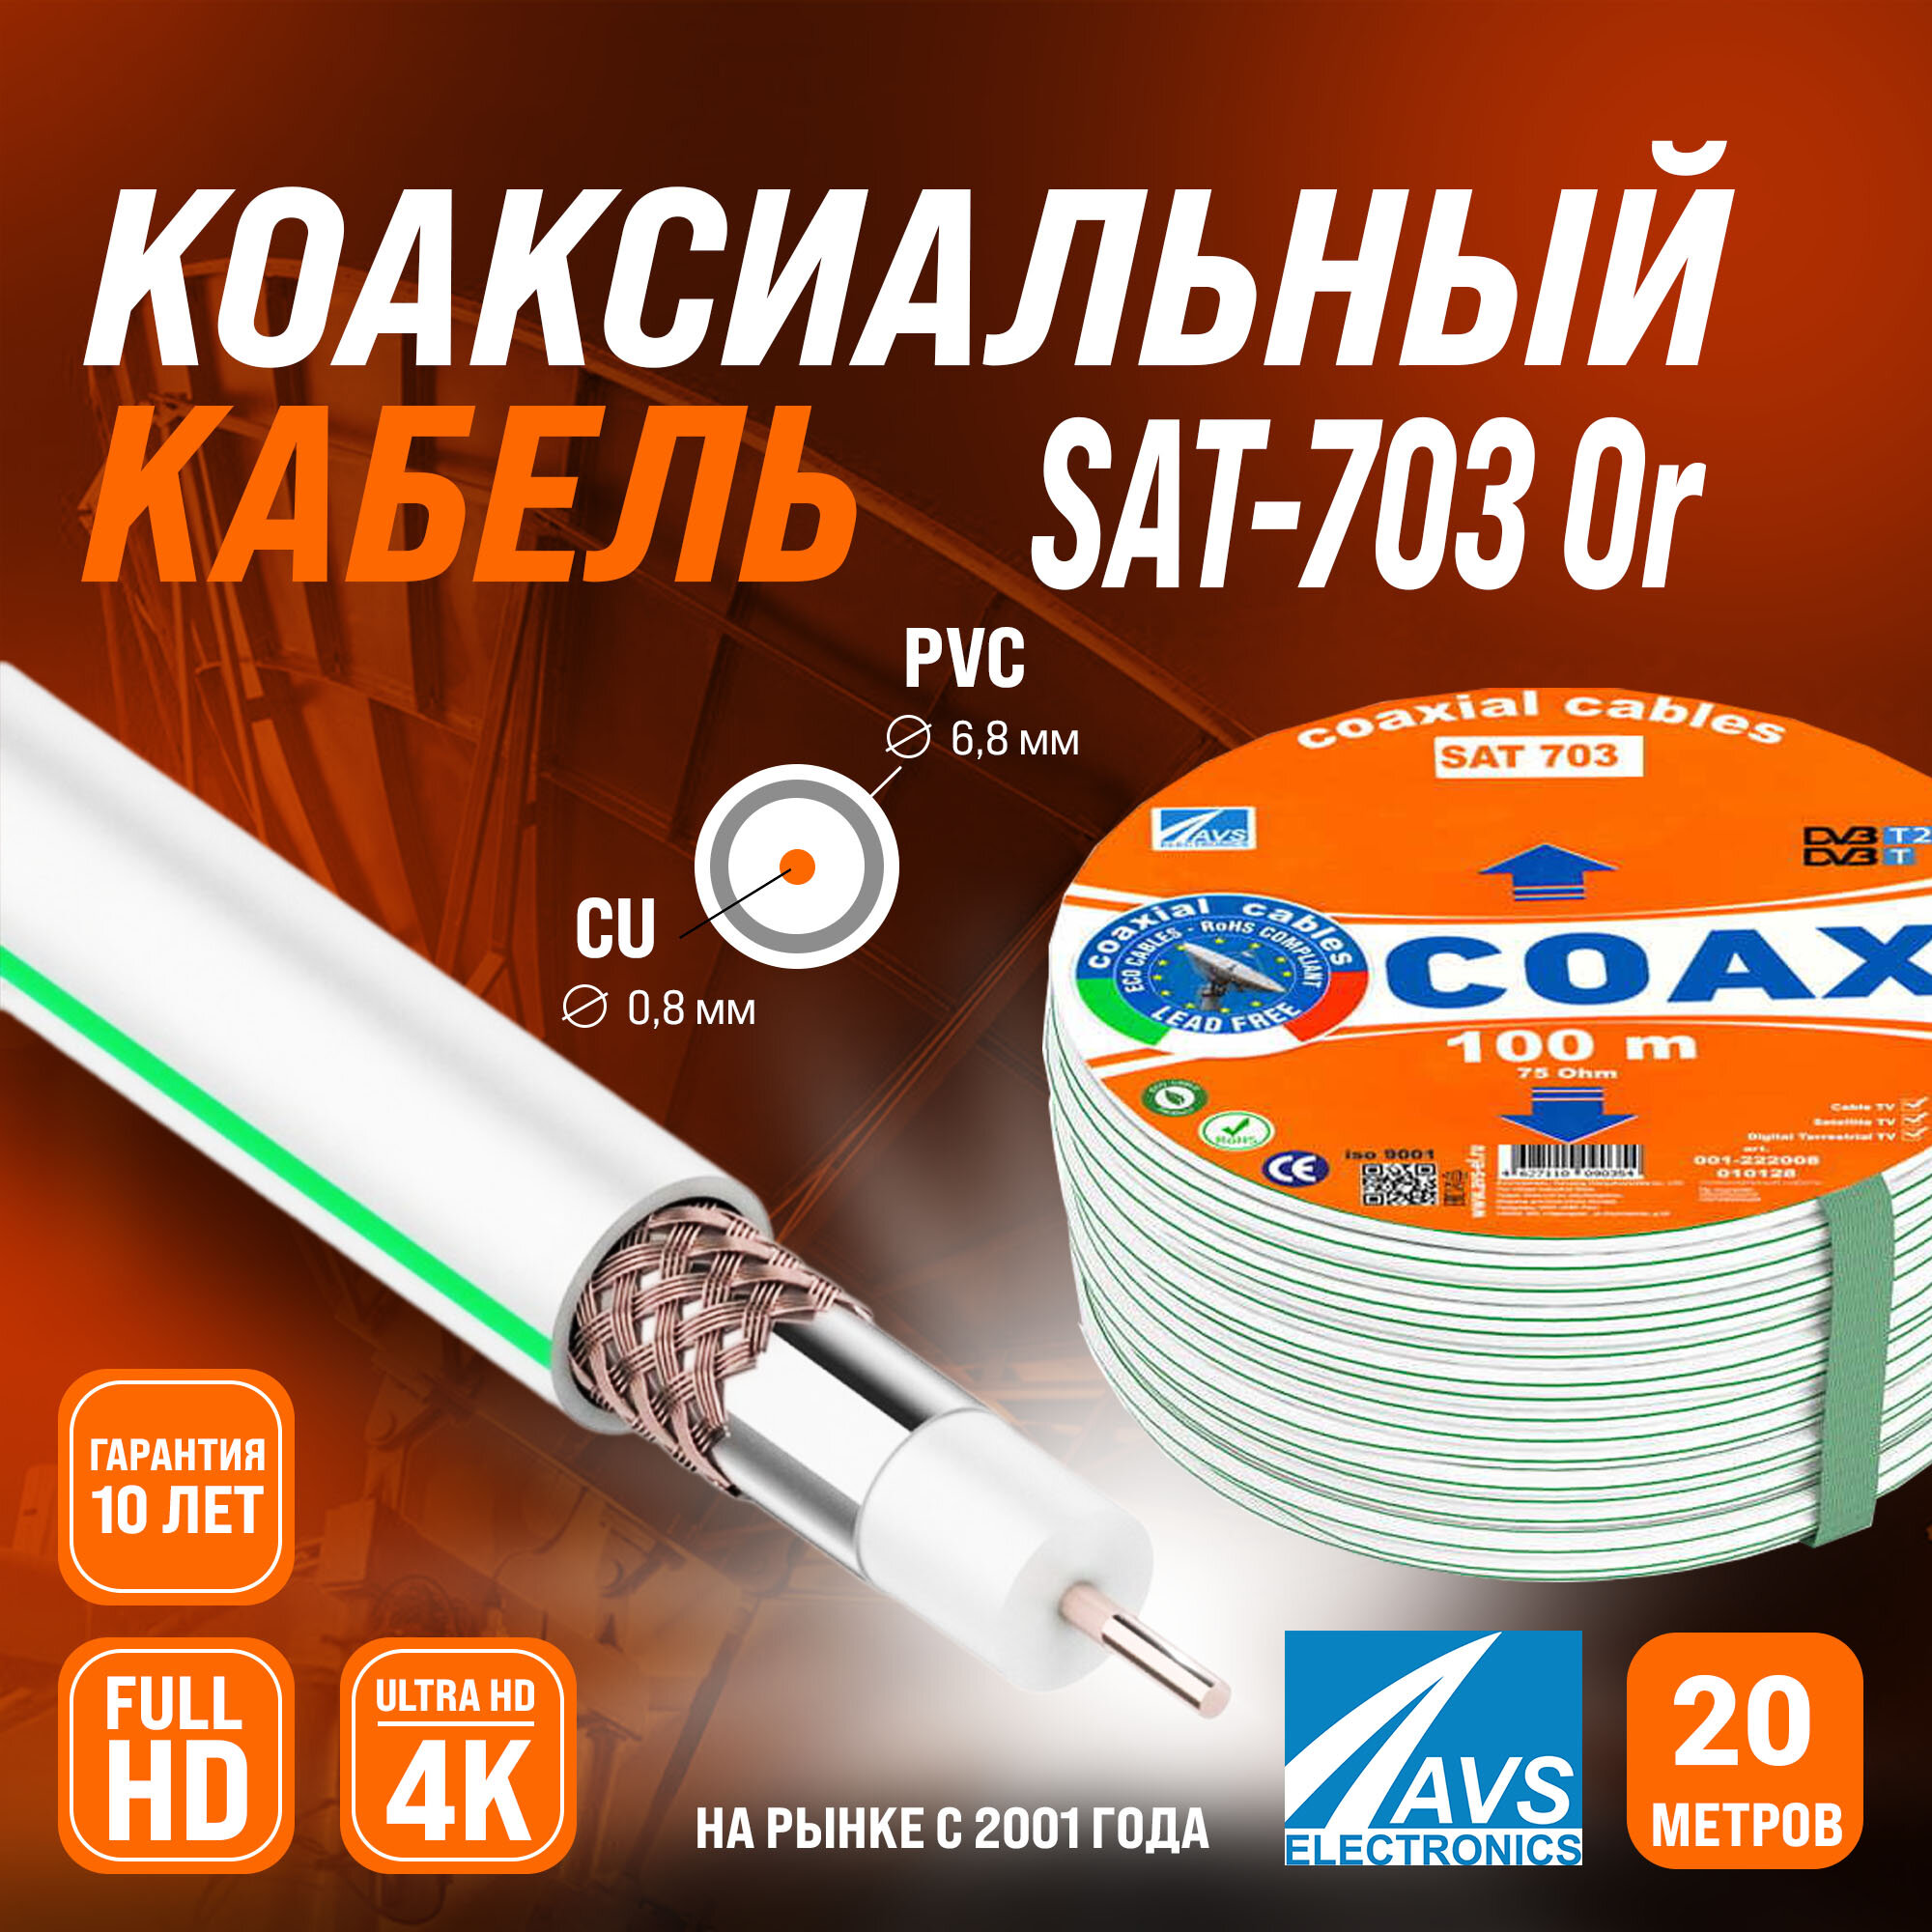 Медный телевизионный коаксиальный кабель 20 м SAT-703 Cu Or AVS Electronics антенный провод для спутниковой тарелки, цифрового, эфирного тв 20 метров 001-222008/20